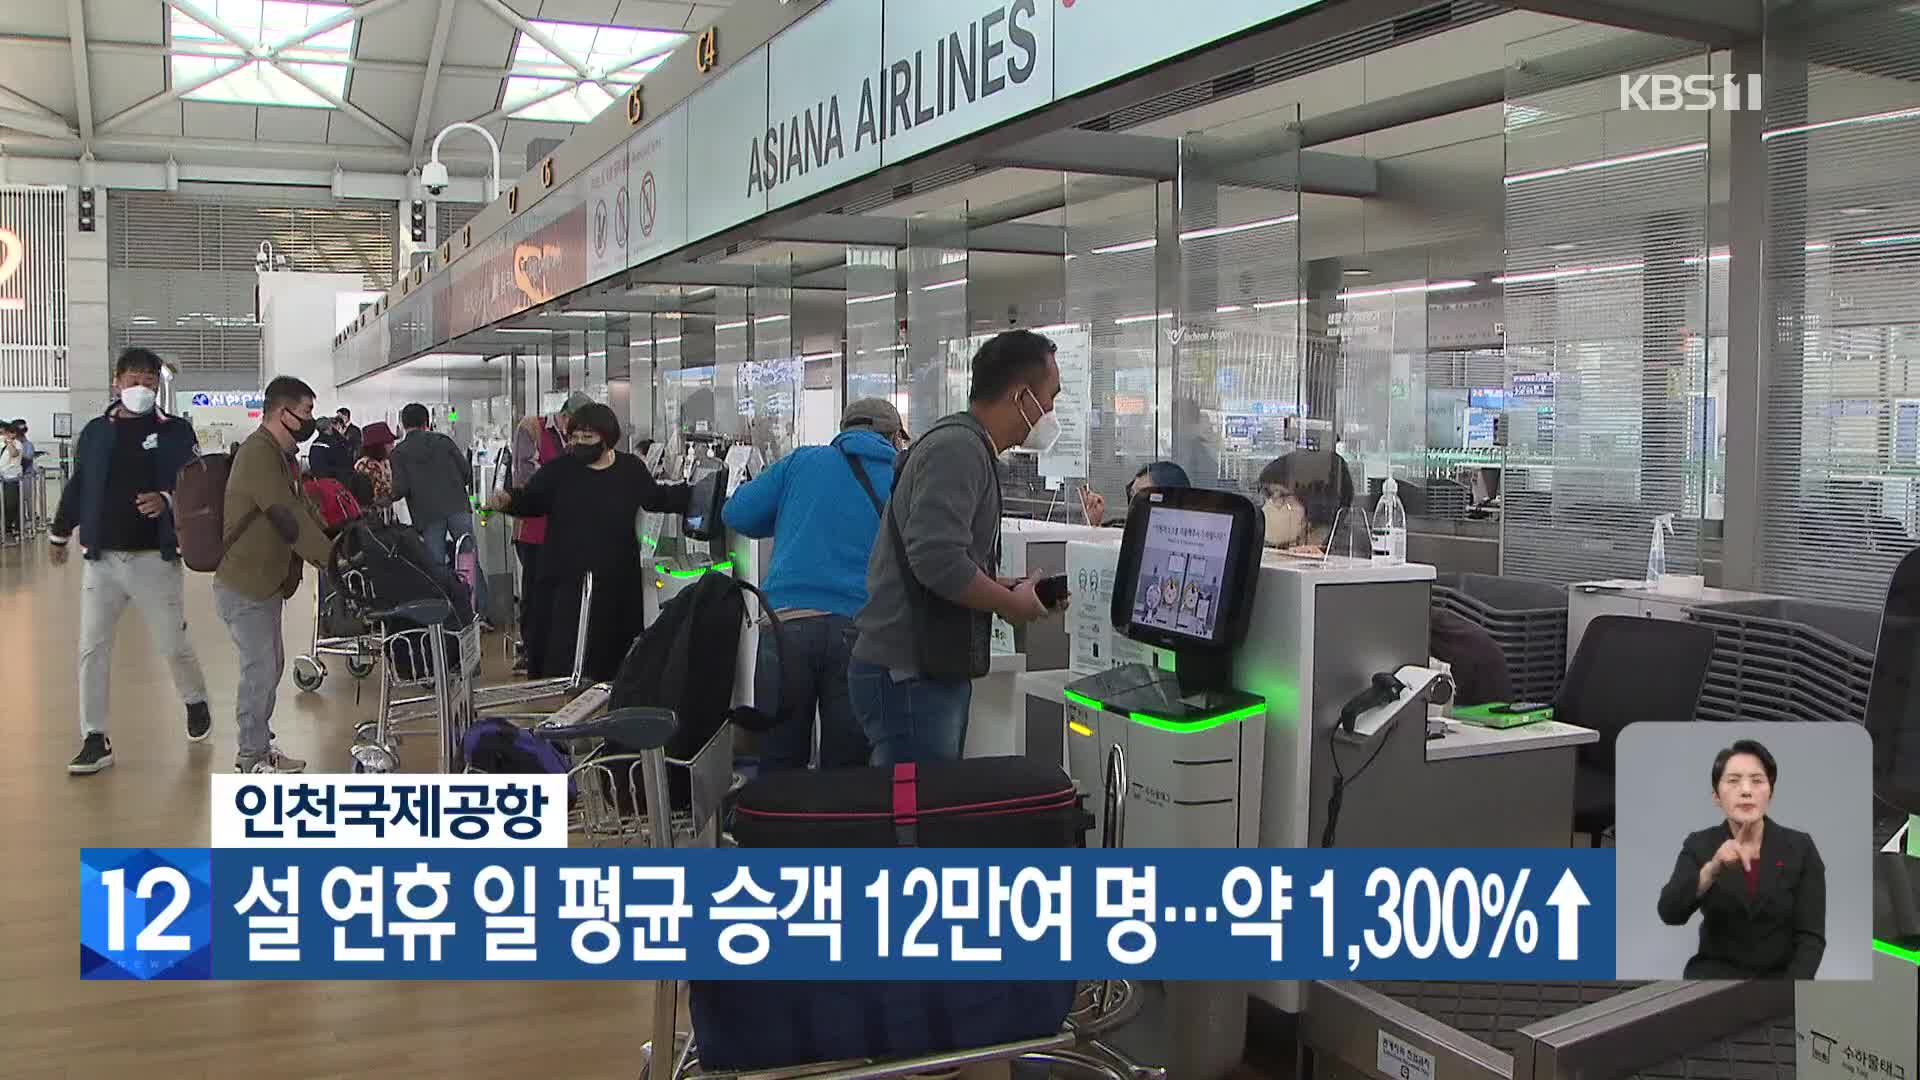 인천국제공항, 설 연휴 일 평균 승객 12만여 명… 약 1,300%↑